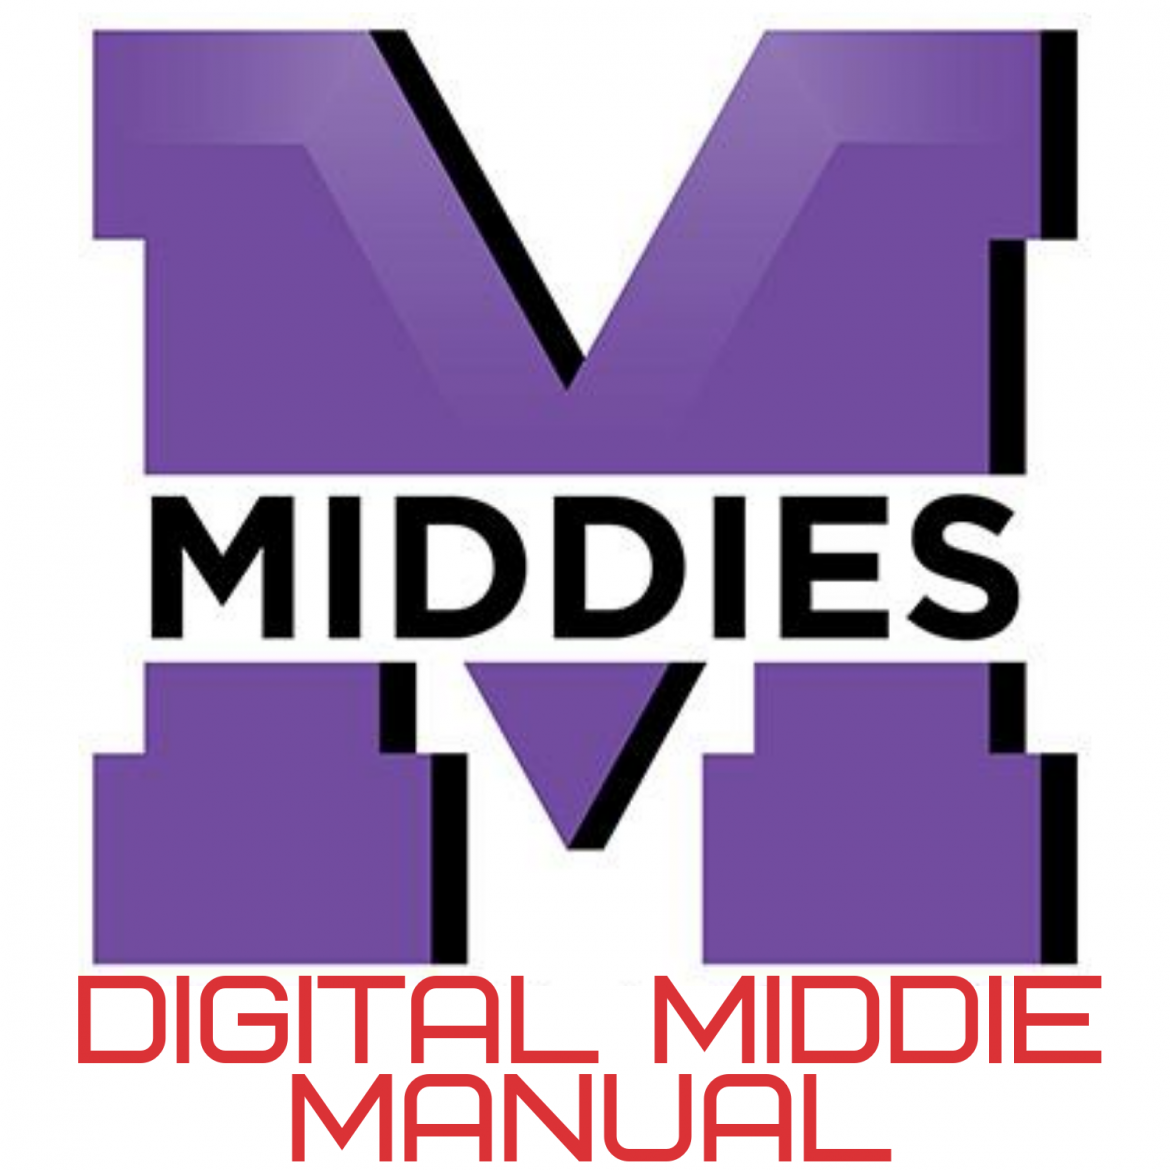 Digital Middie Manual